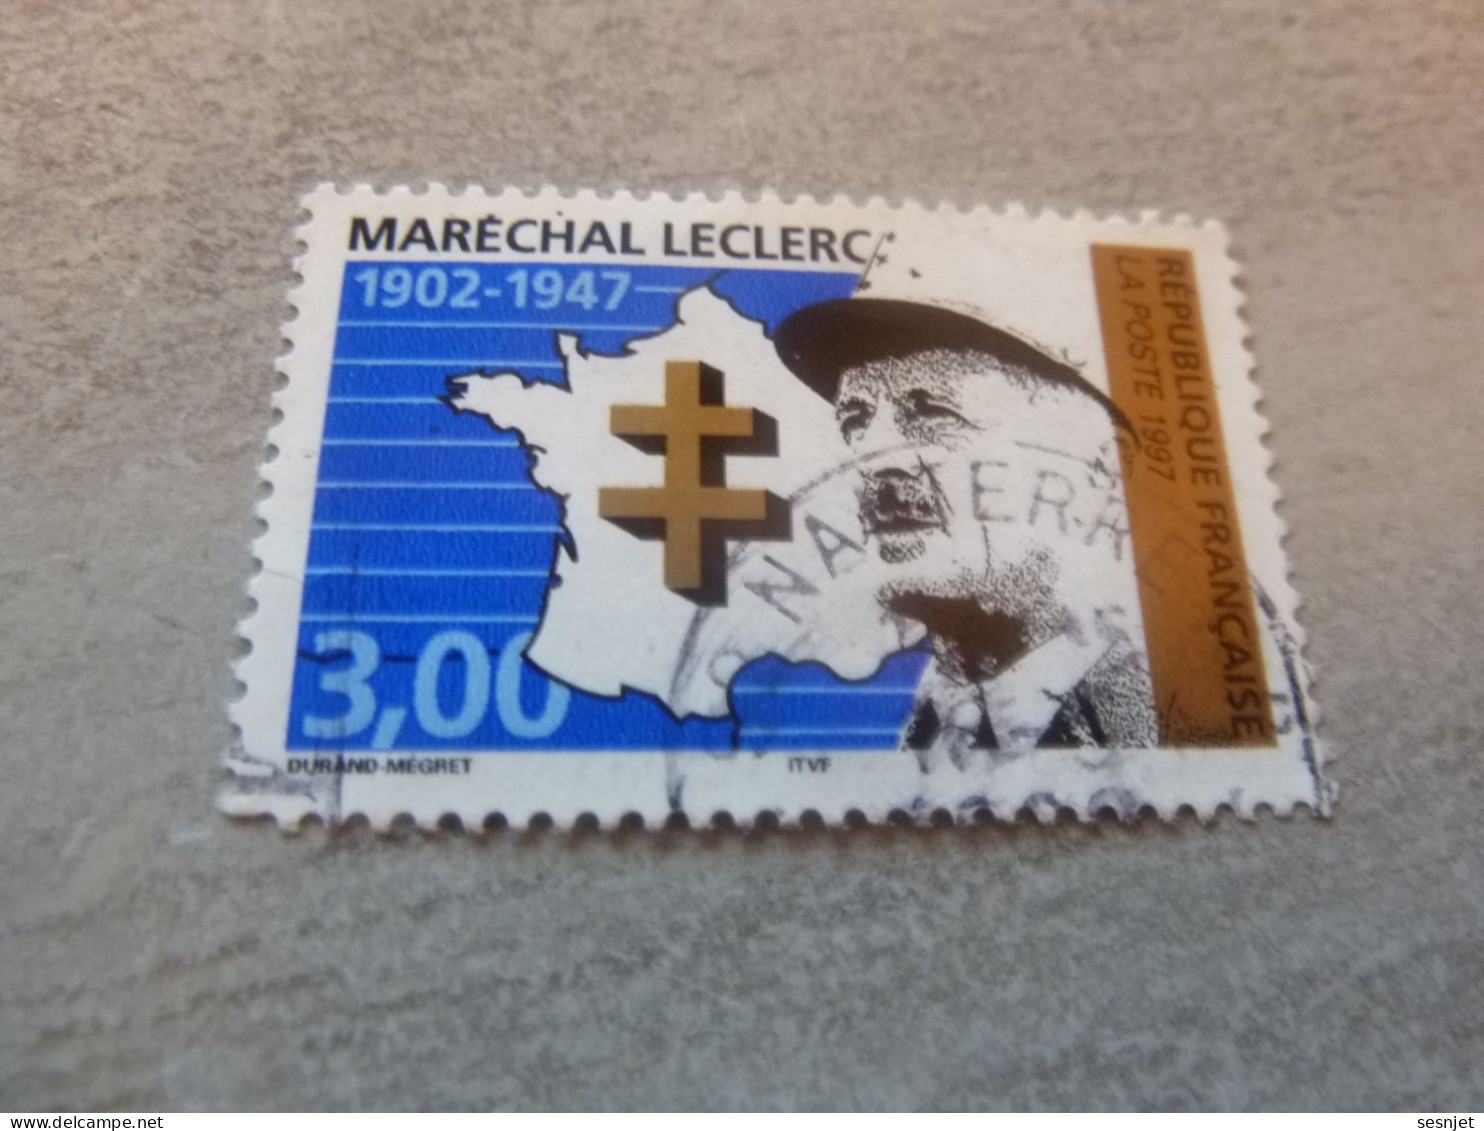 Général Leclerc (1902-1947) Maréchal - 3f. - Yt 3126 - Vert, Noir Et Bleu - Oblitéré - Année 1997 - - Usati